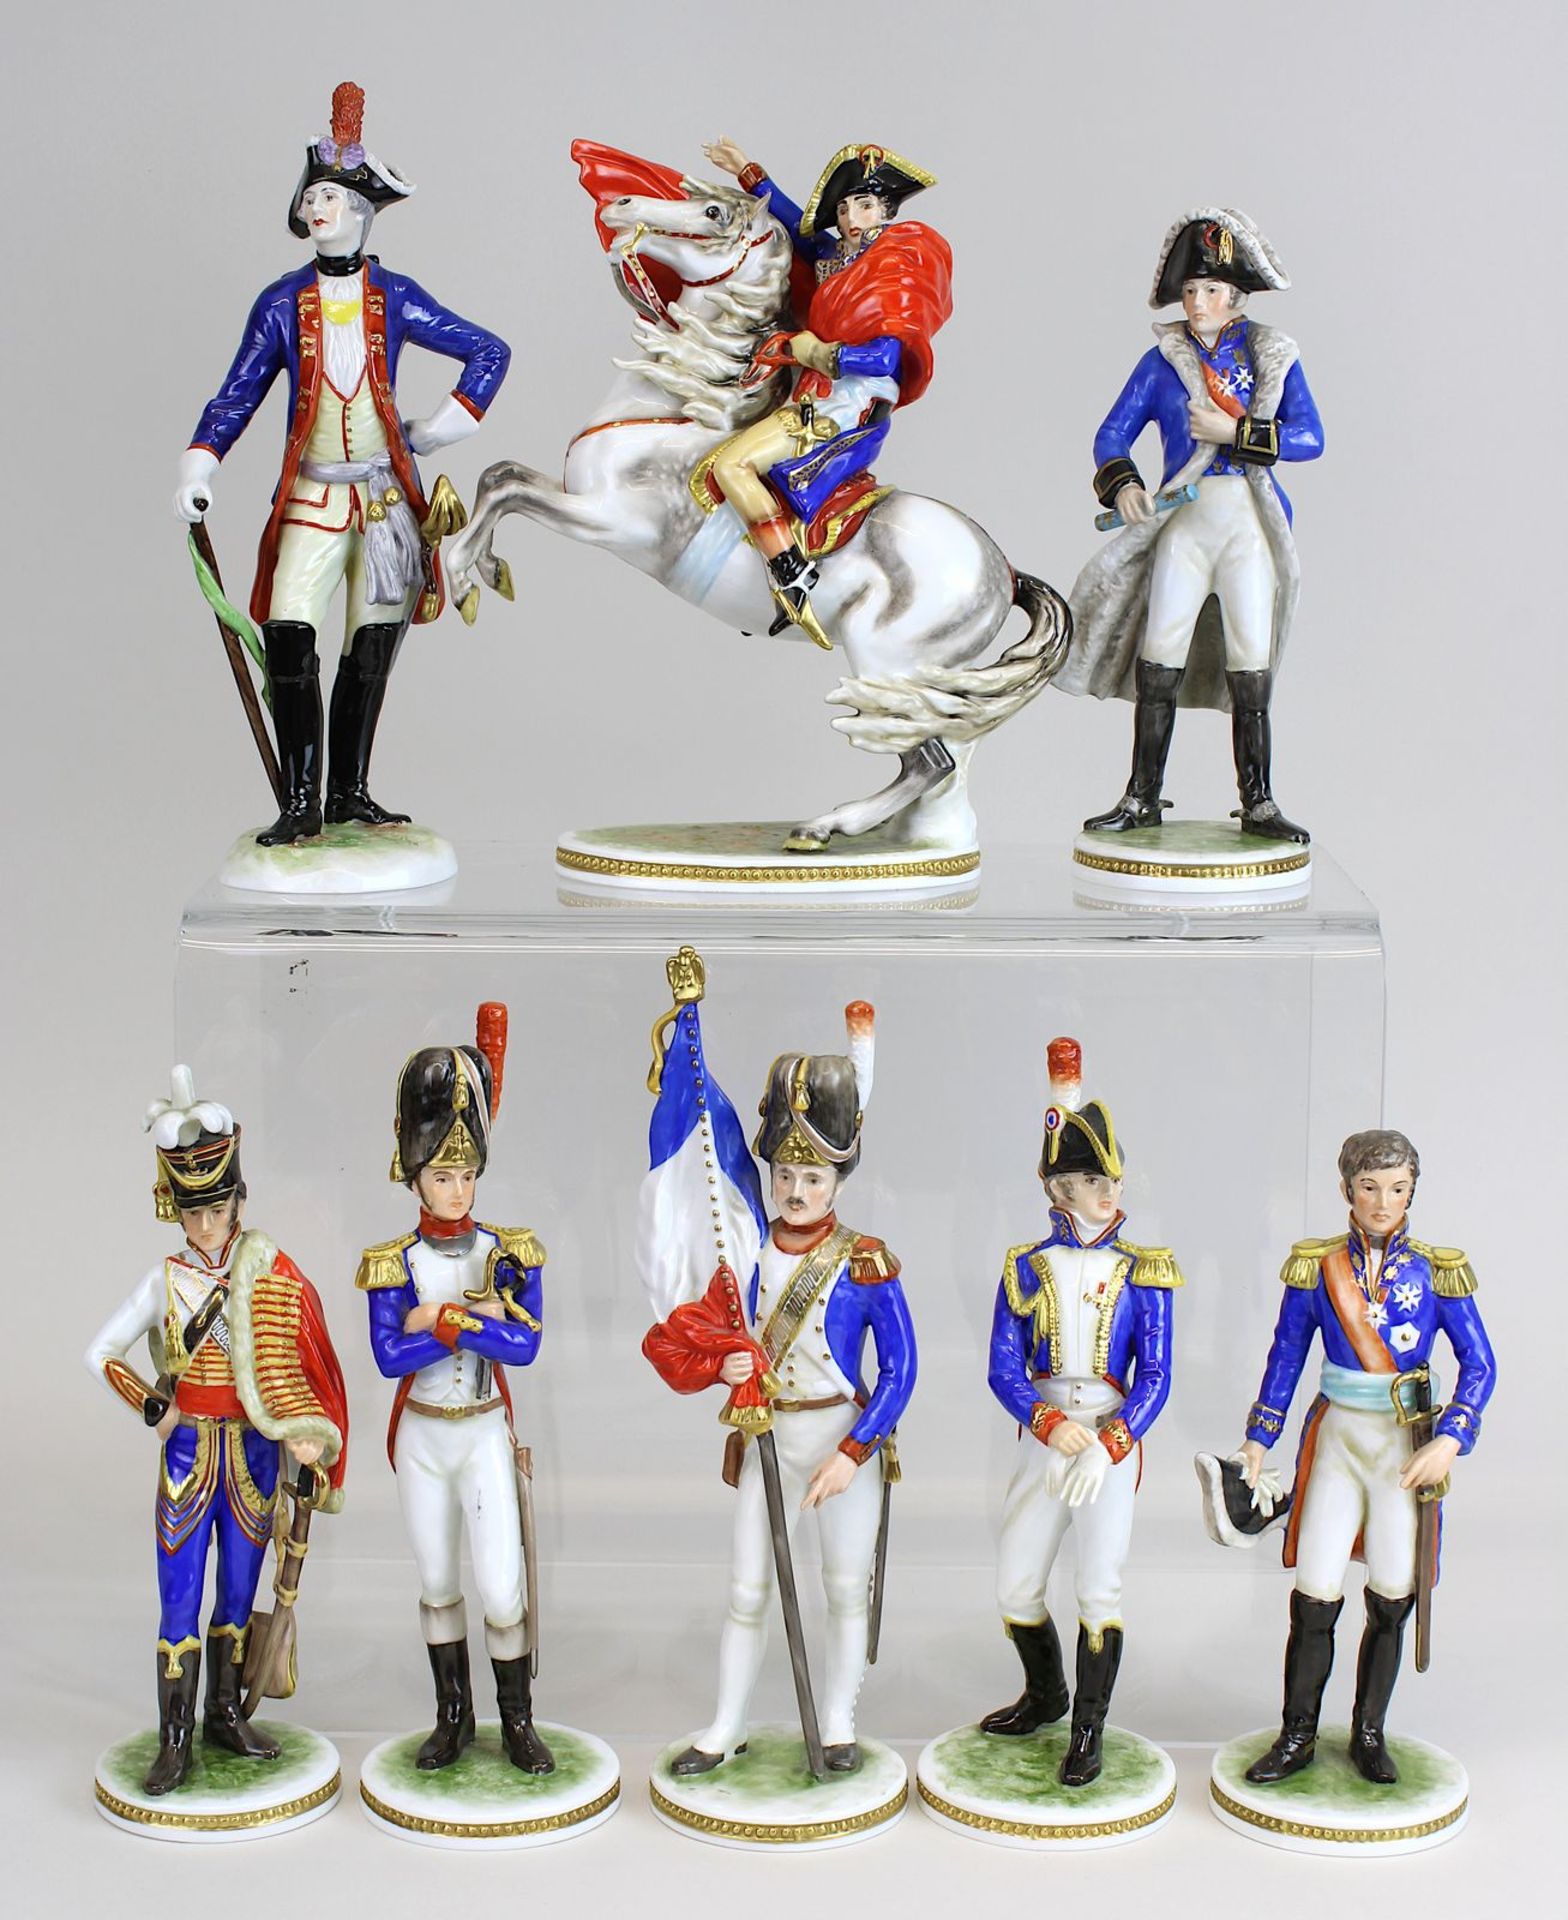 Franz. Soldaten, Porzellan, 2. H. 20. Jh., farbig u. gold staffiert, unterschiedl. Uniformen in Blau